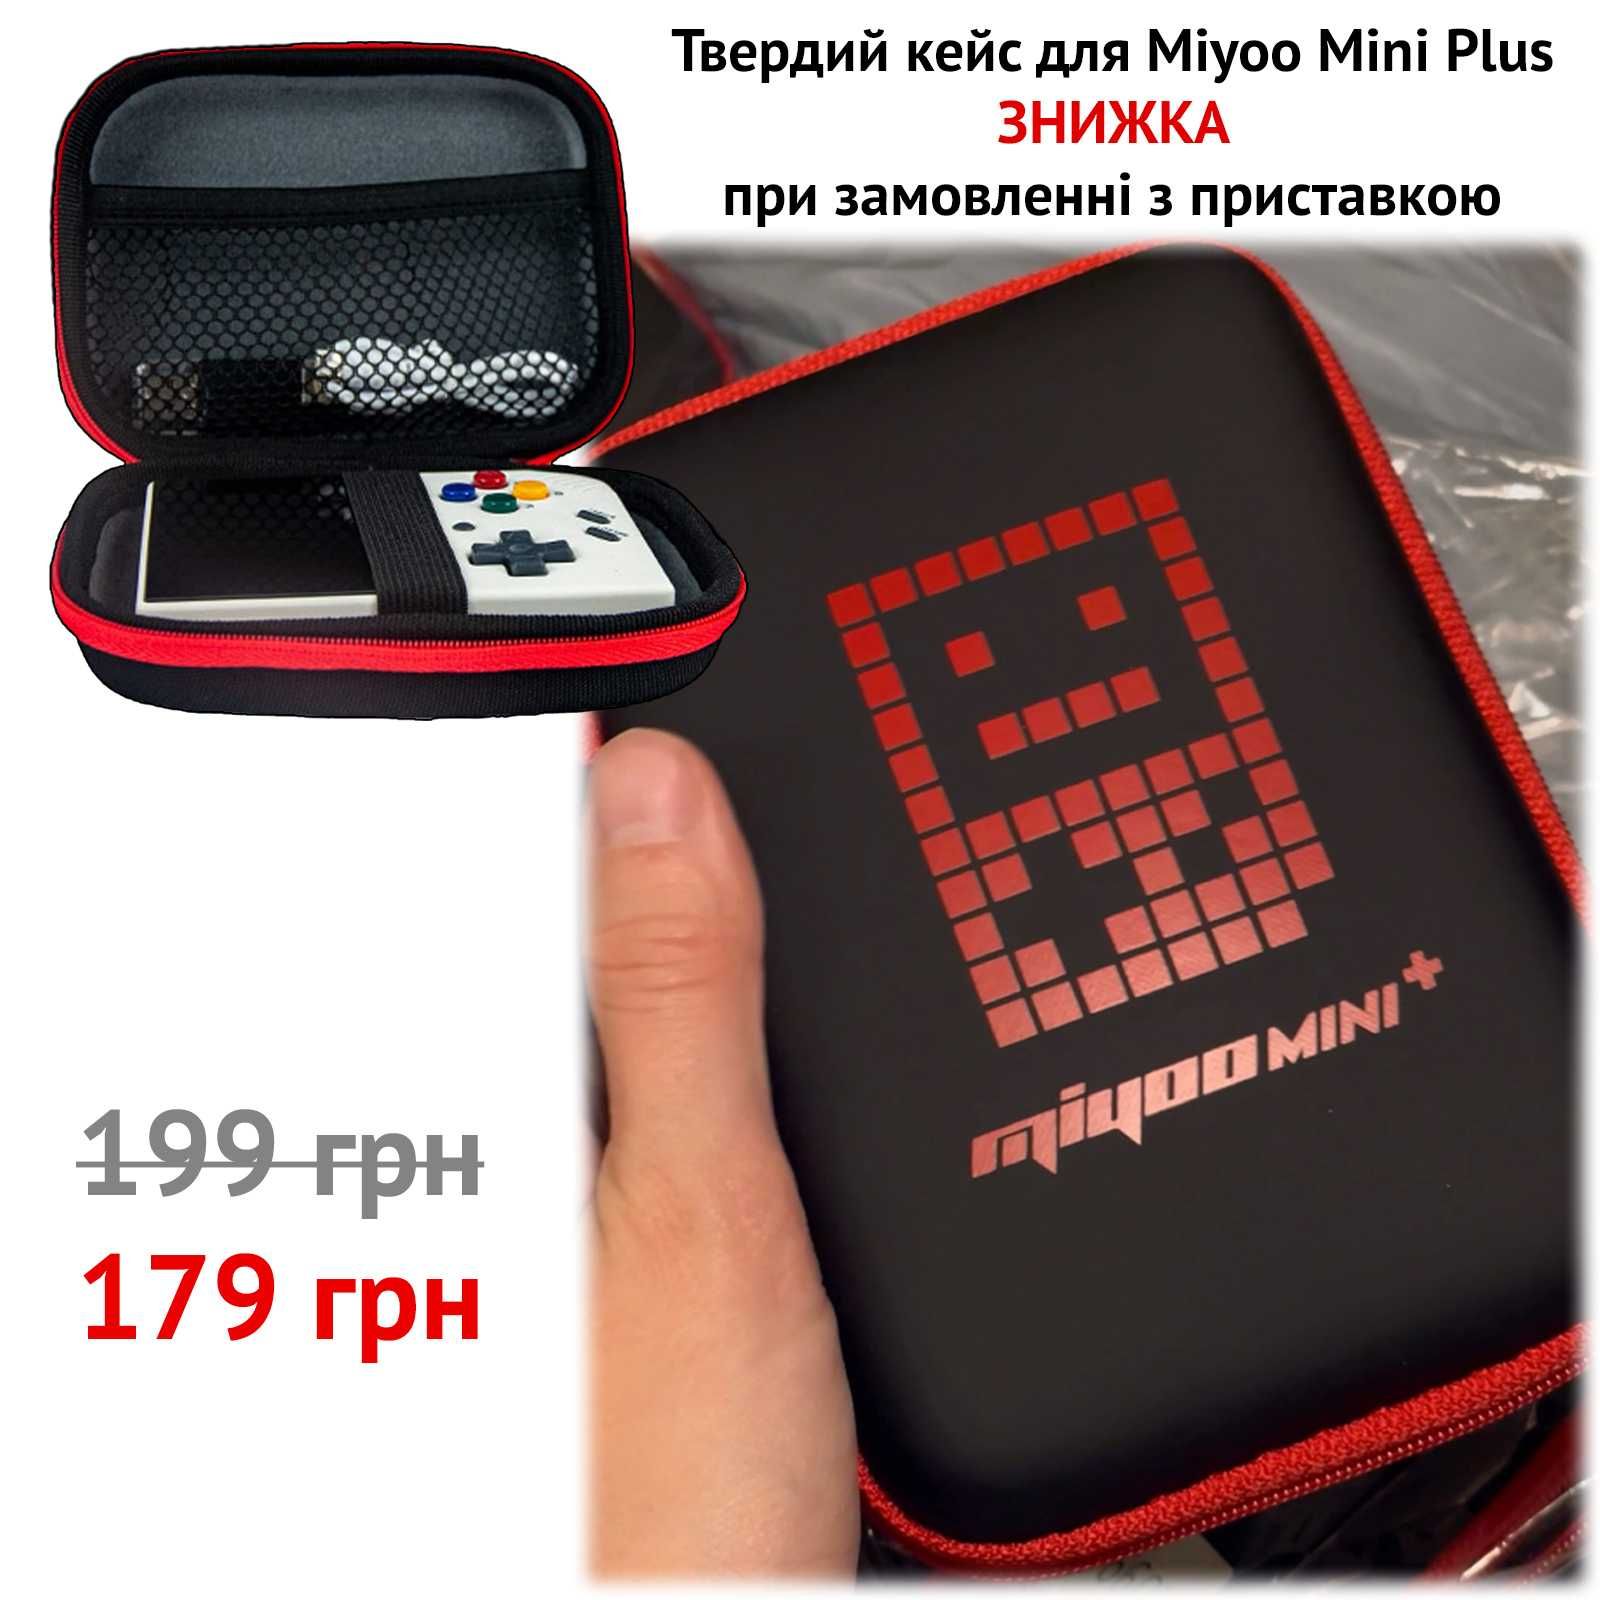 Ігрова приставка Miyoo Mini Plus V3 64GB нова OnionOS + ігри